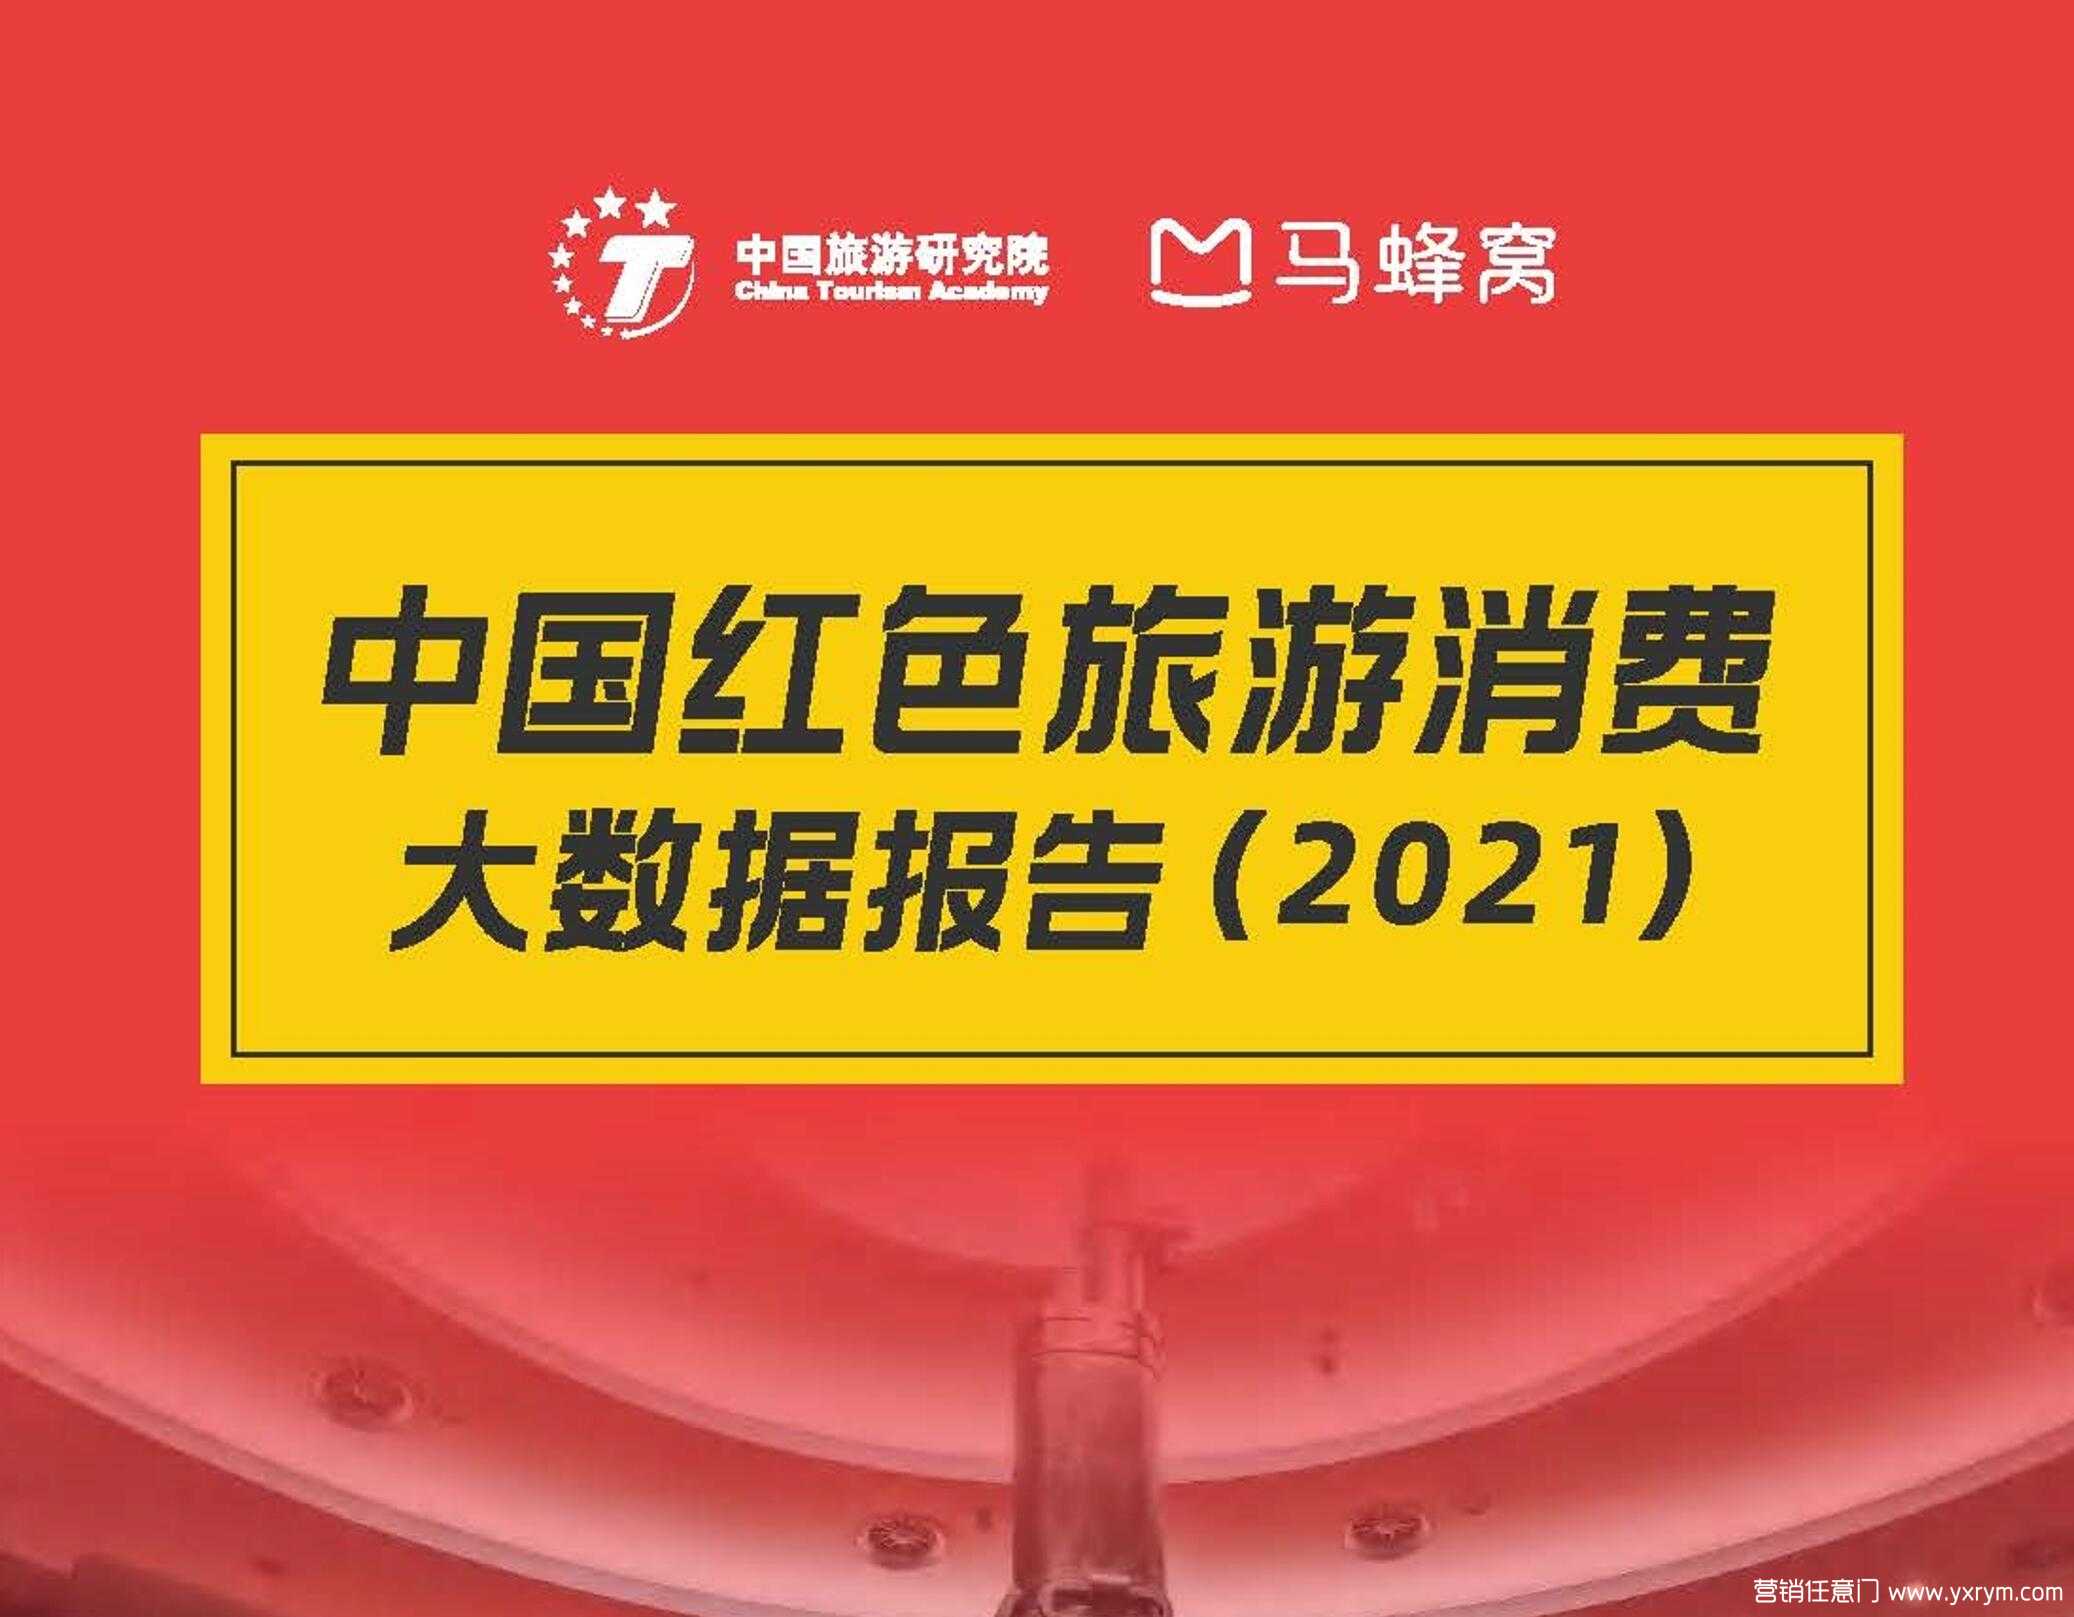 【营销任意门】2021中国红色旅游消费大数据报告